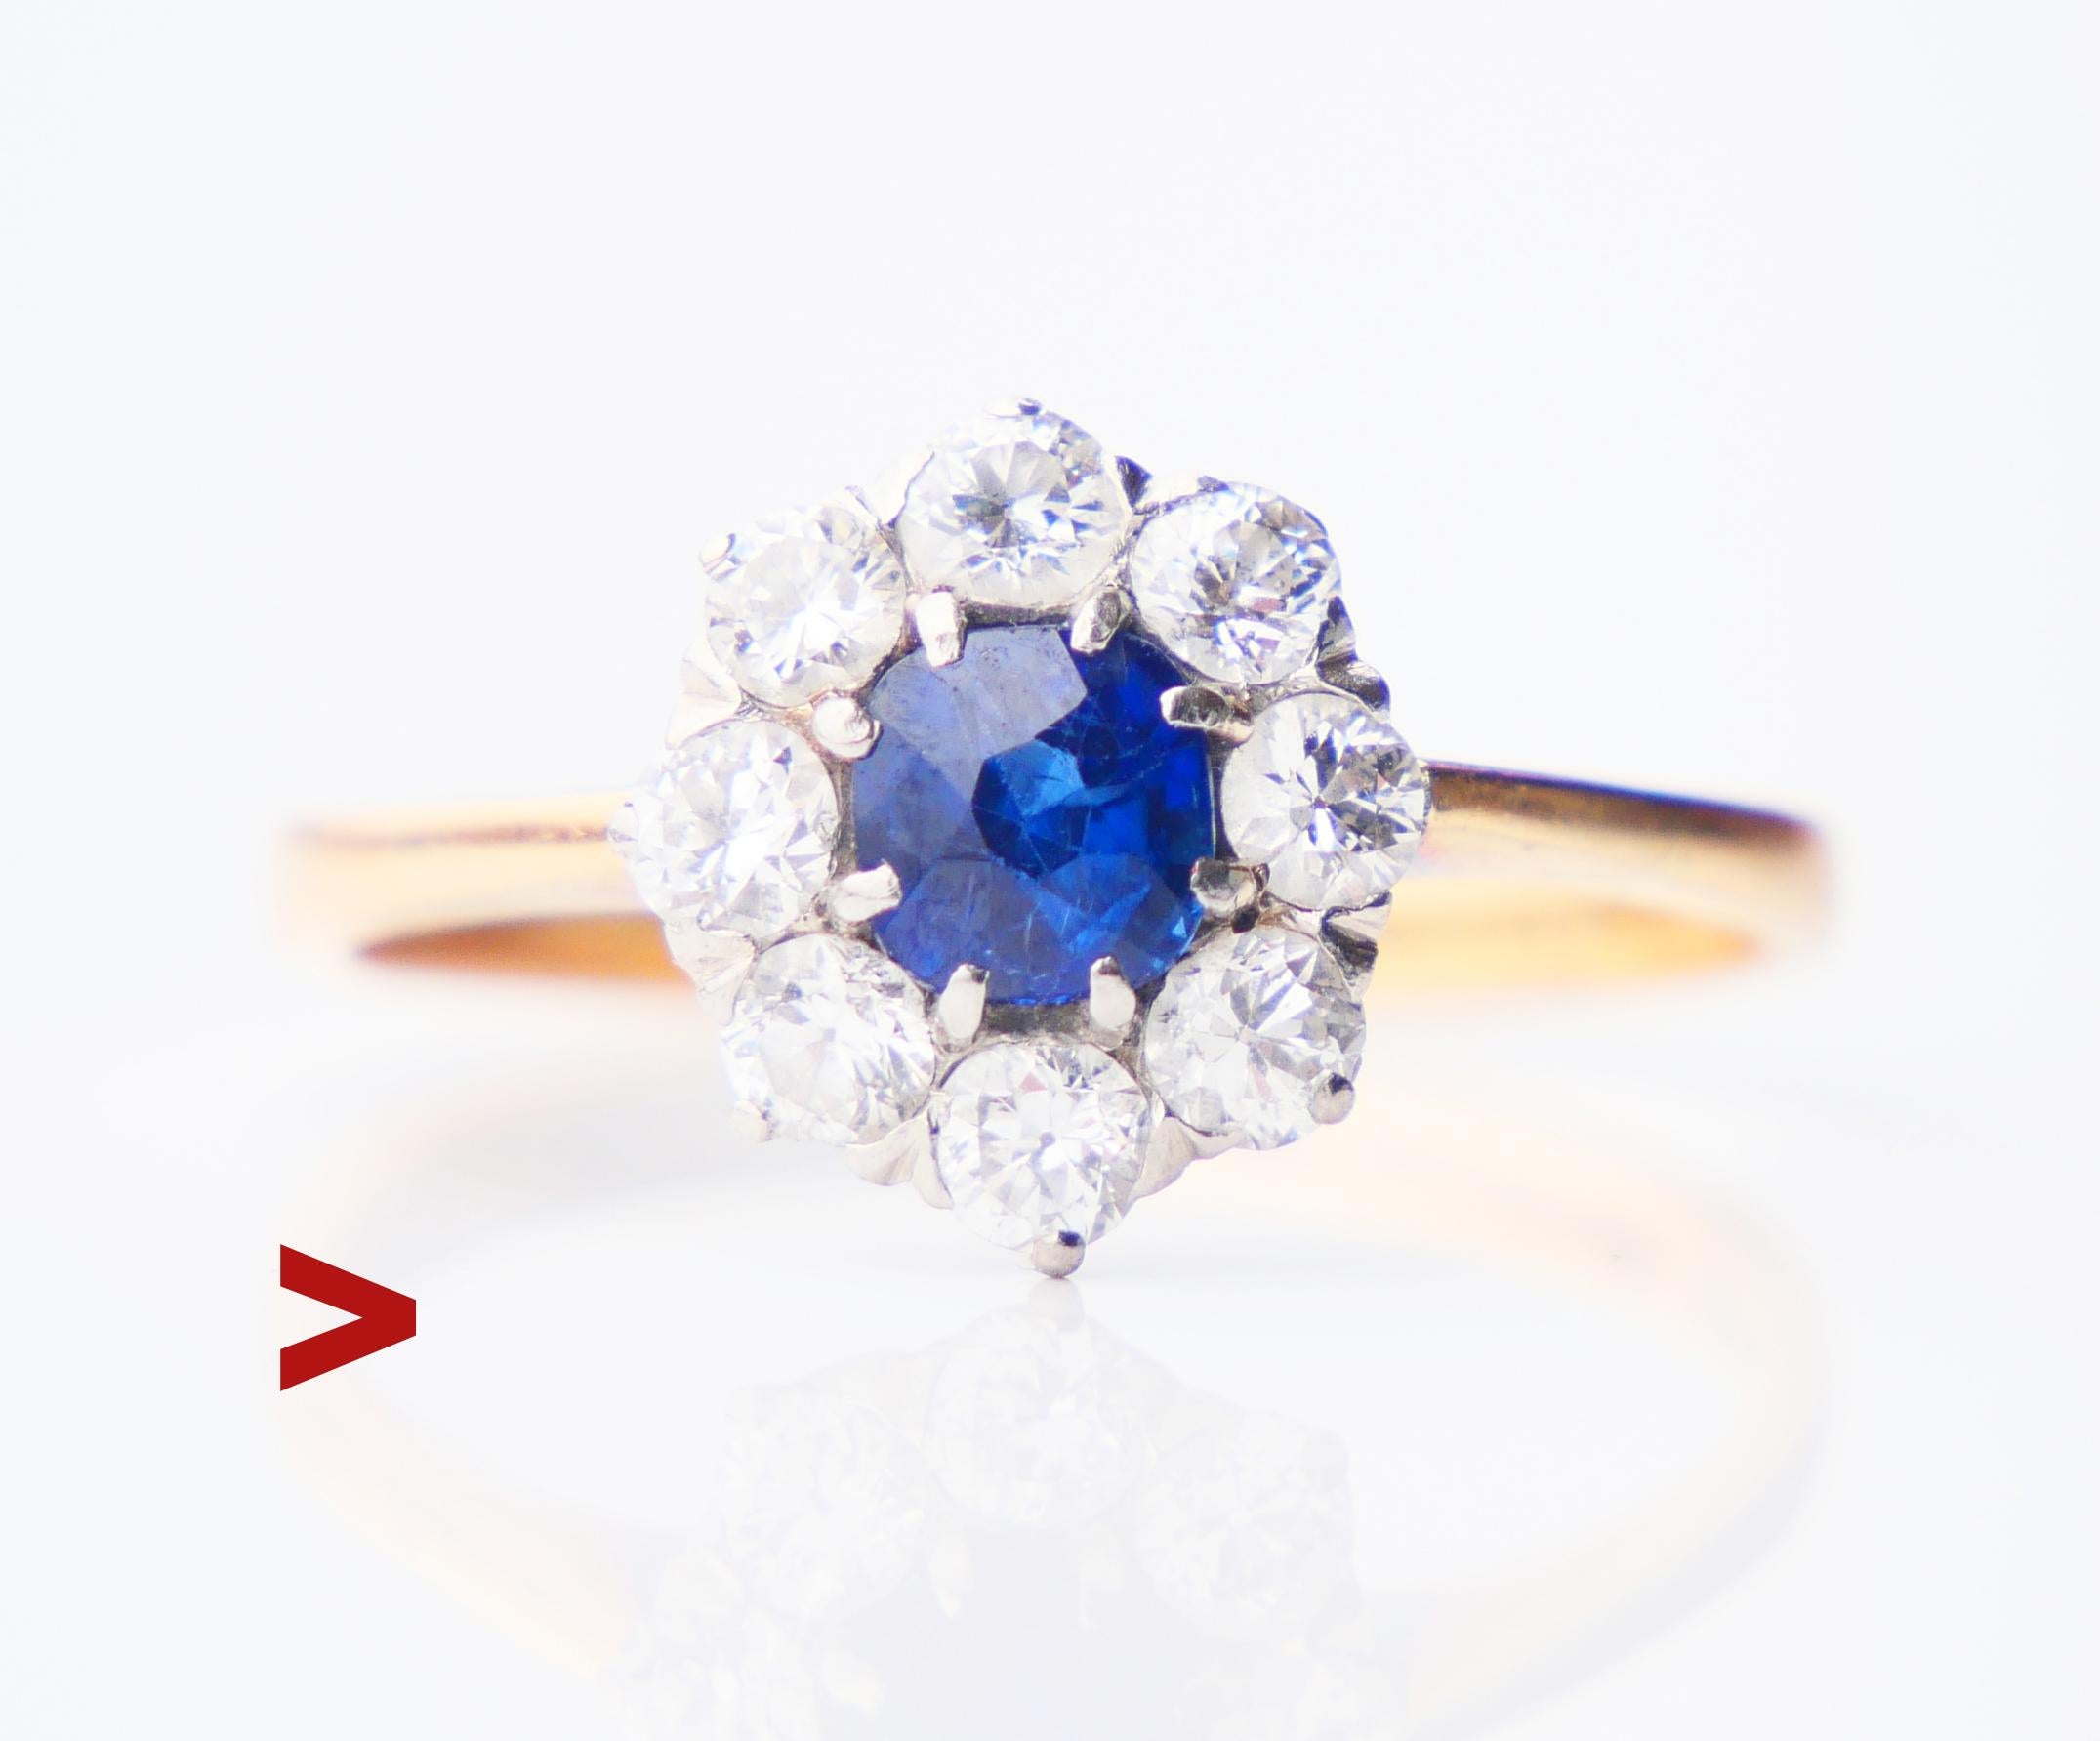 Schöner Halo Ring in massivem 18K Gelbgold mit natürlichem blauem Saphir und 8 Diamanten in Weißgold / oder Platinfassung.

Blüte/Krone: Ø 11 mm x 4,5 mm tief.
Natürlicher Saphir von altem europäischem Diamantschliff, Farbe ist mittelblau, weist